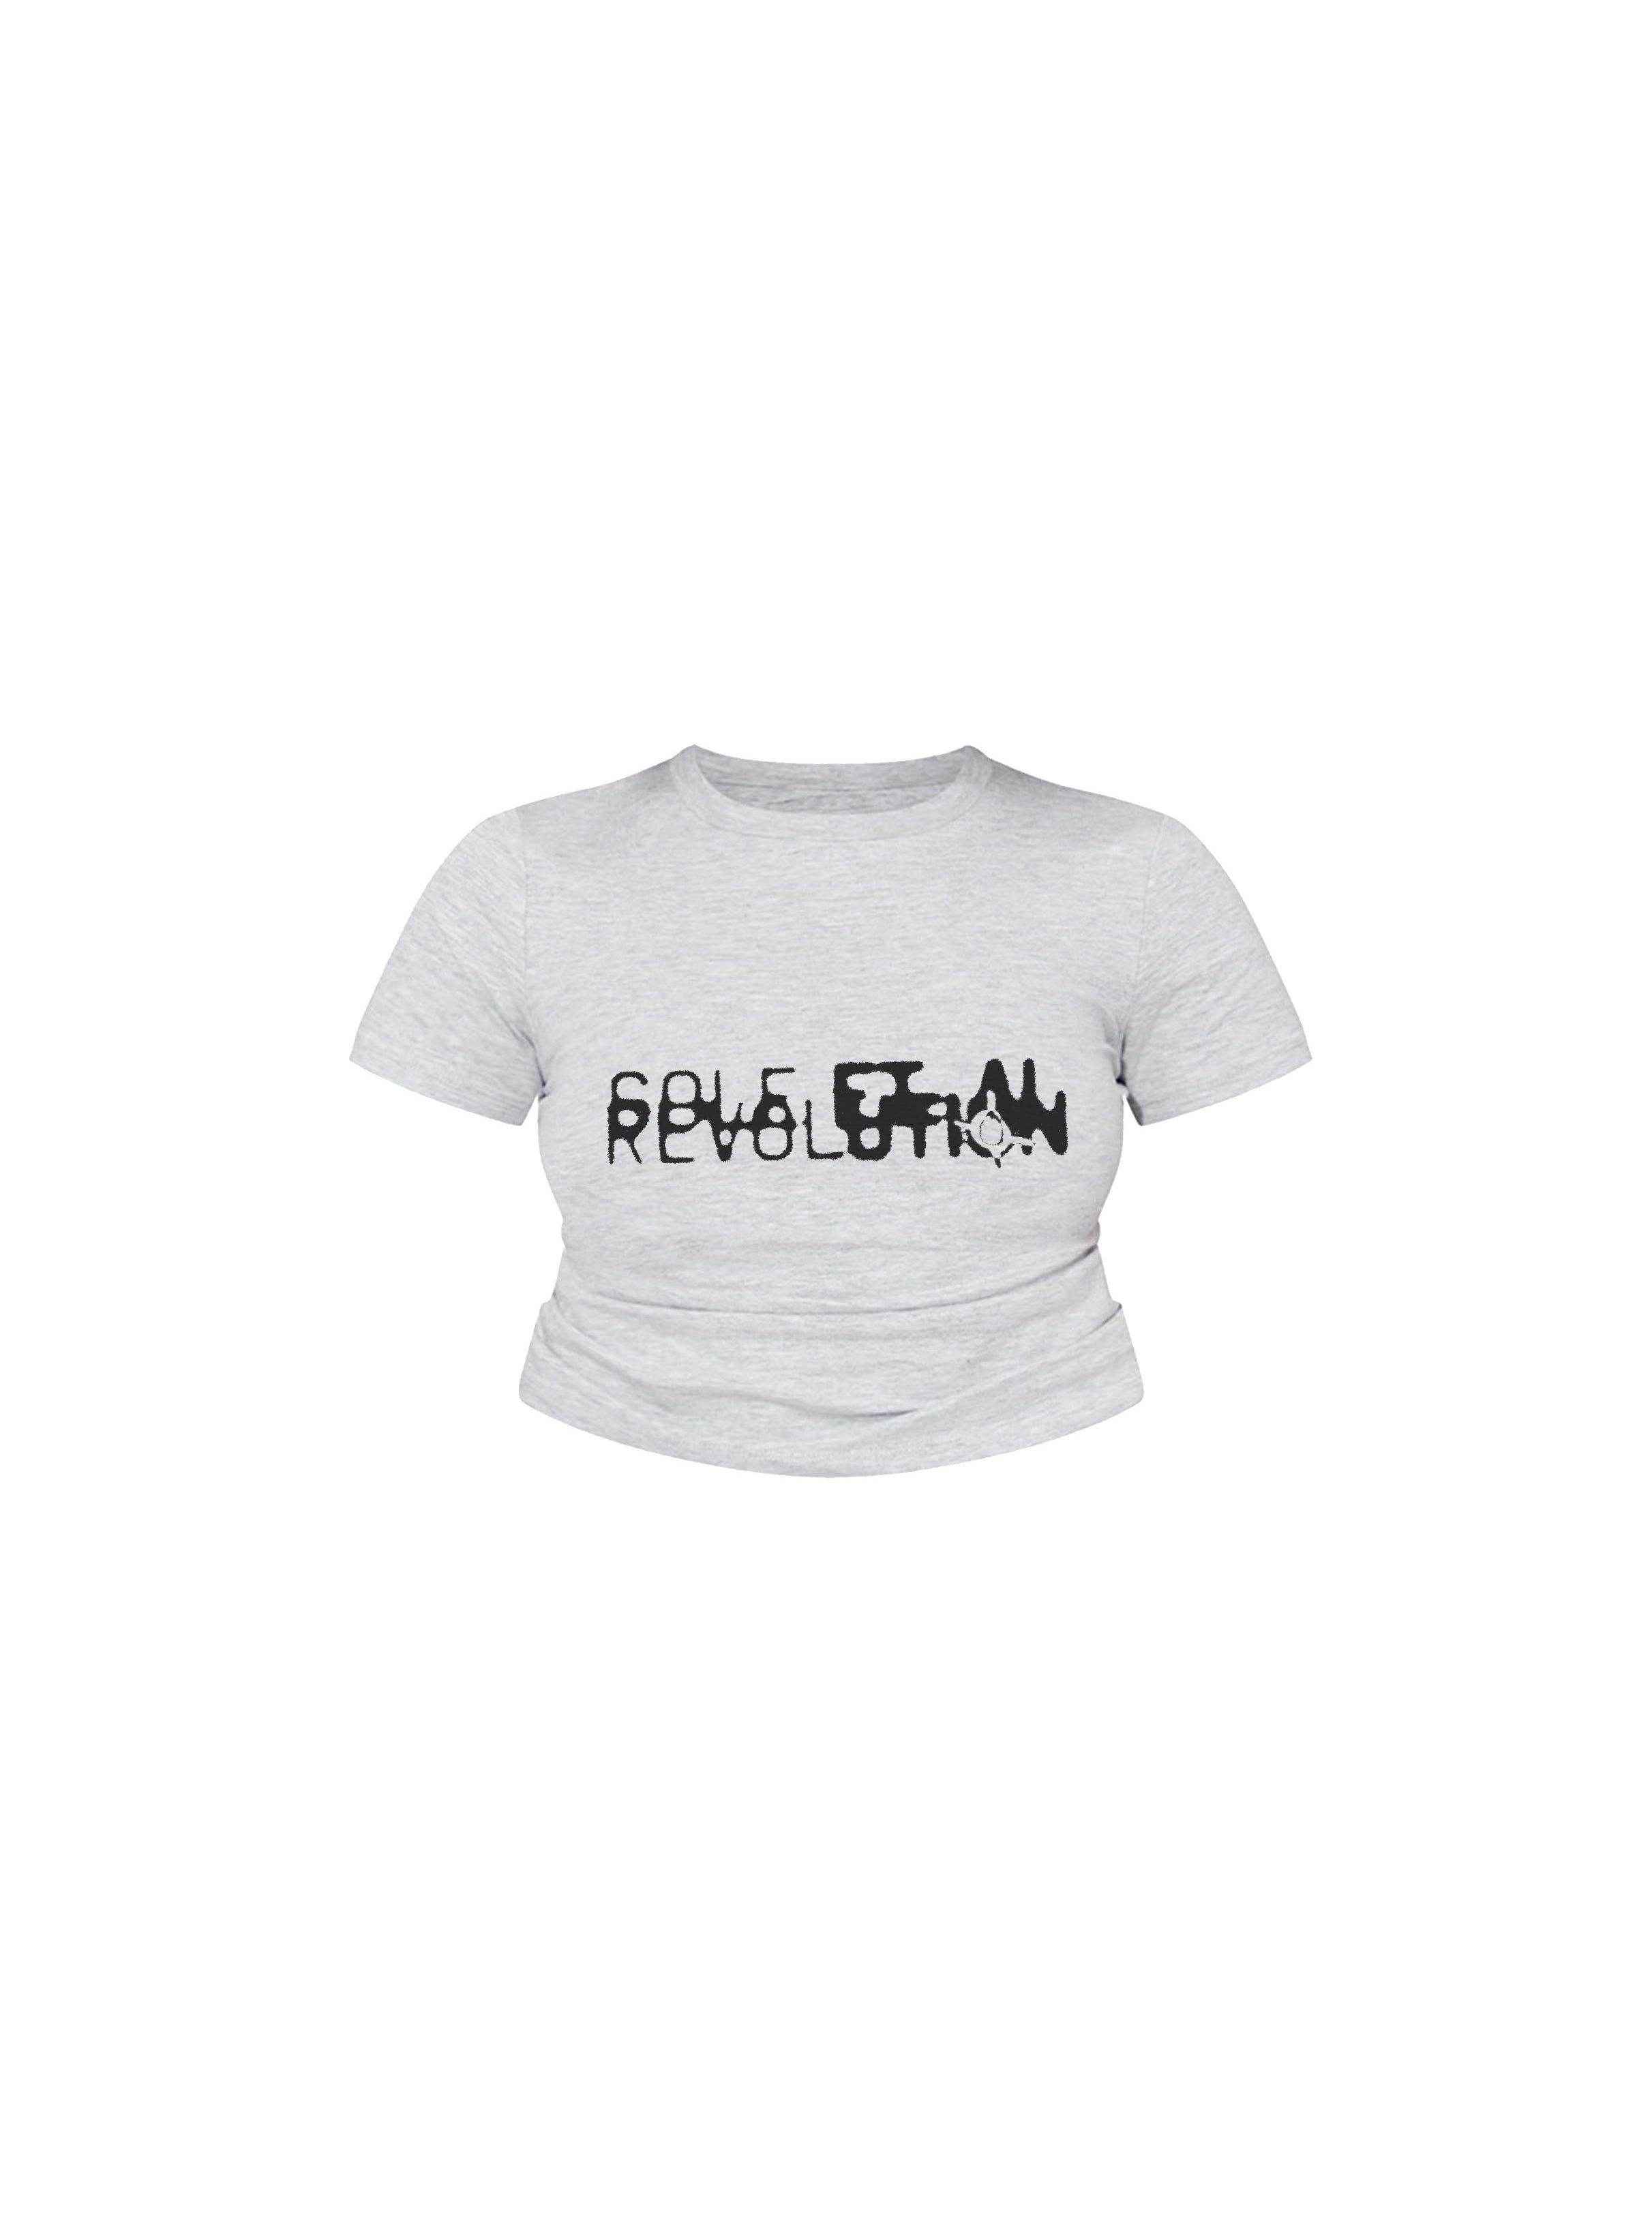 Sole et. Al Women's Revølutiøn Baby Cropped Tee : Grey / Black